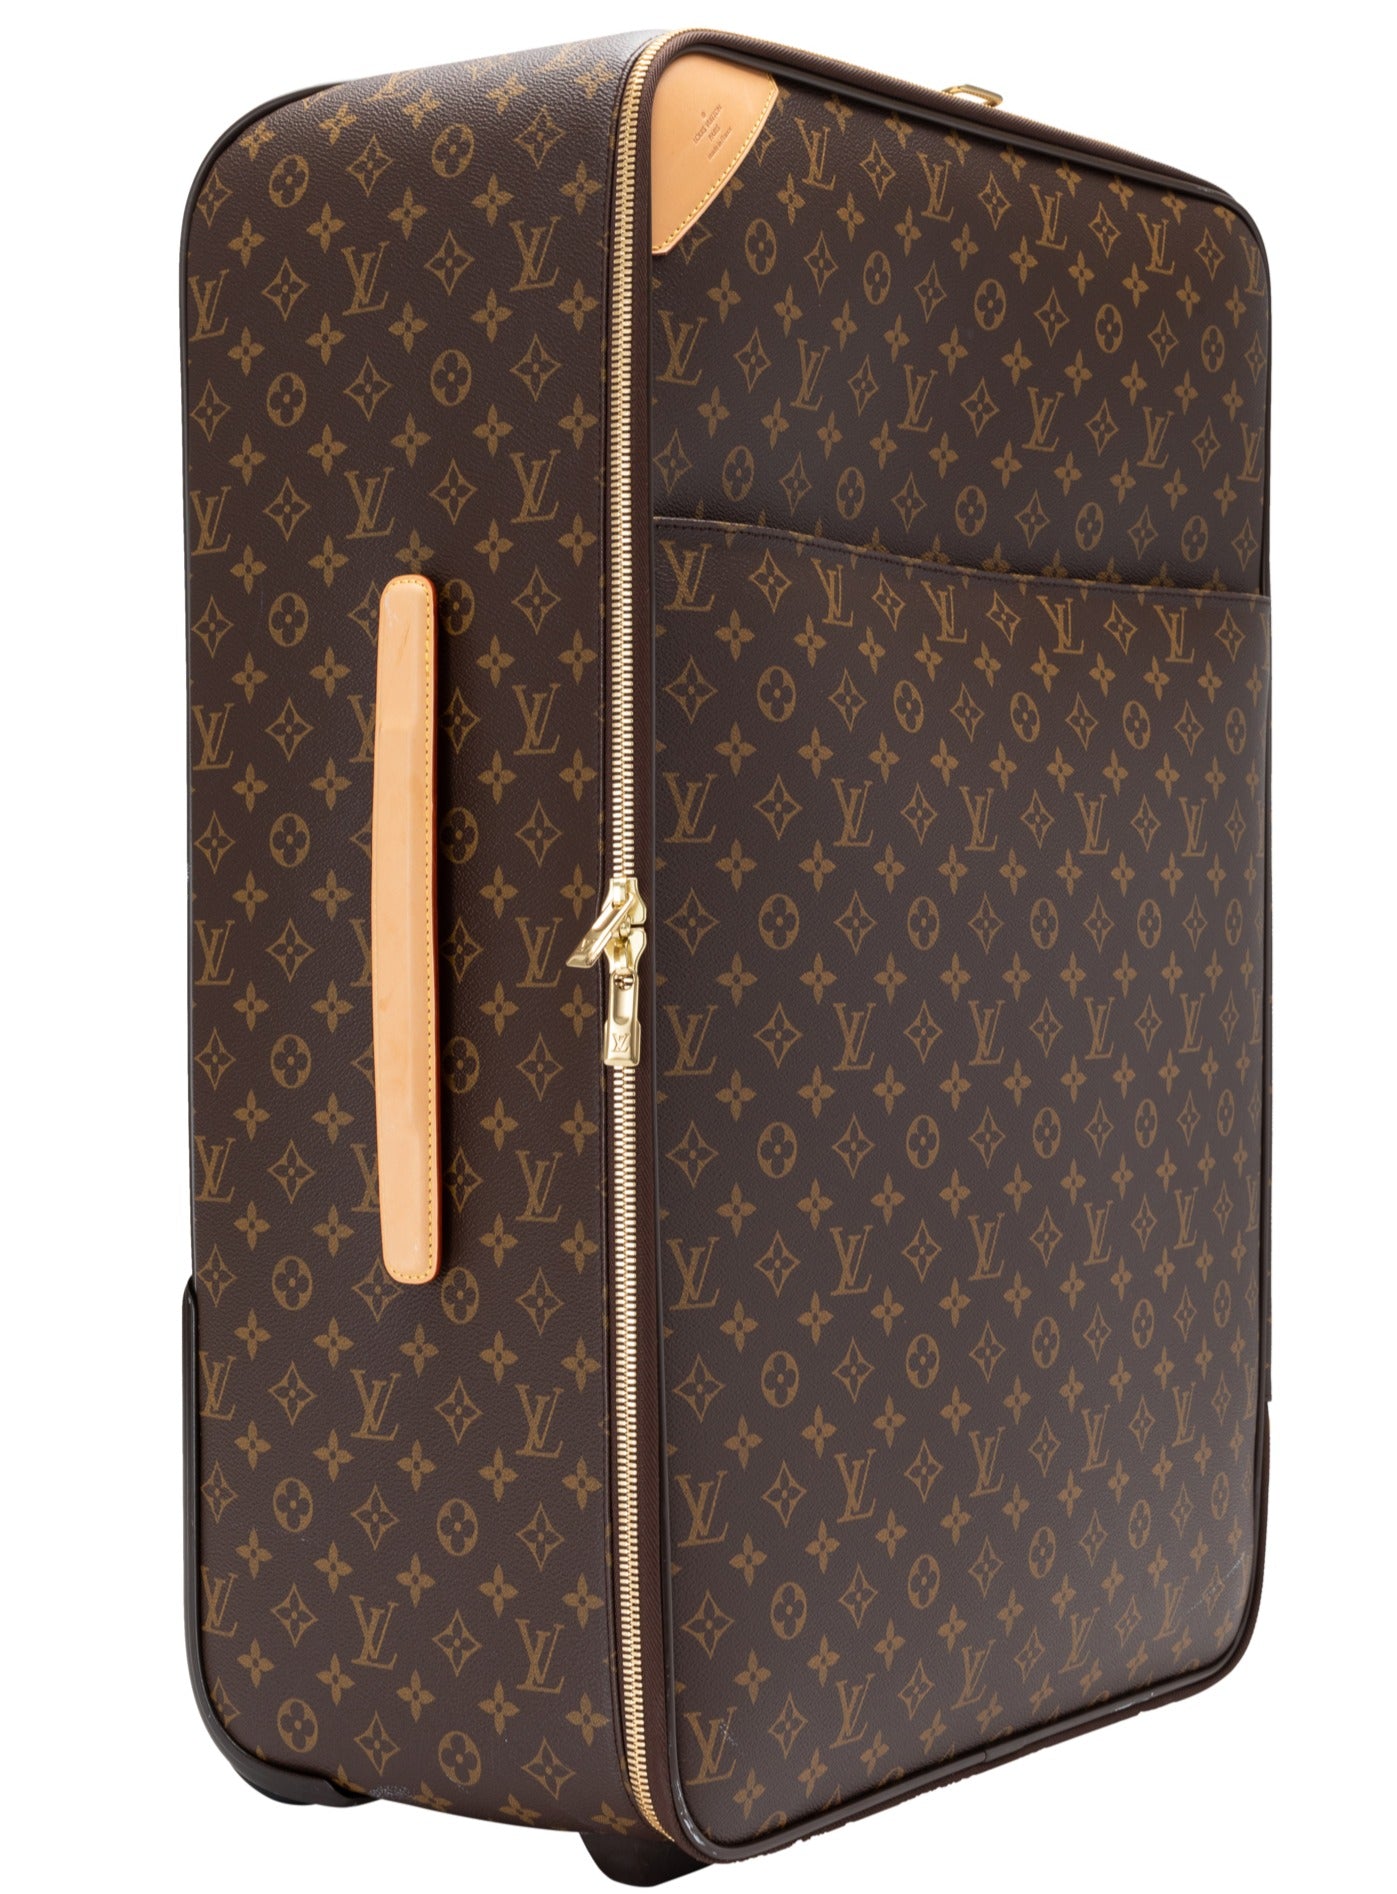 Louis Vuitton Luggage Rolling Monogram Bag